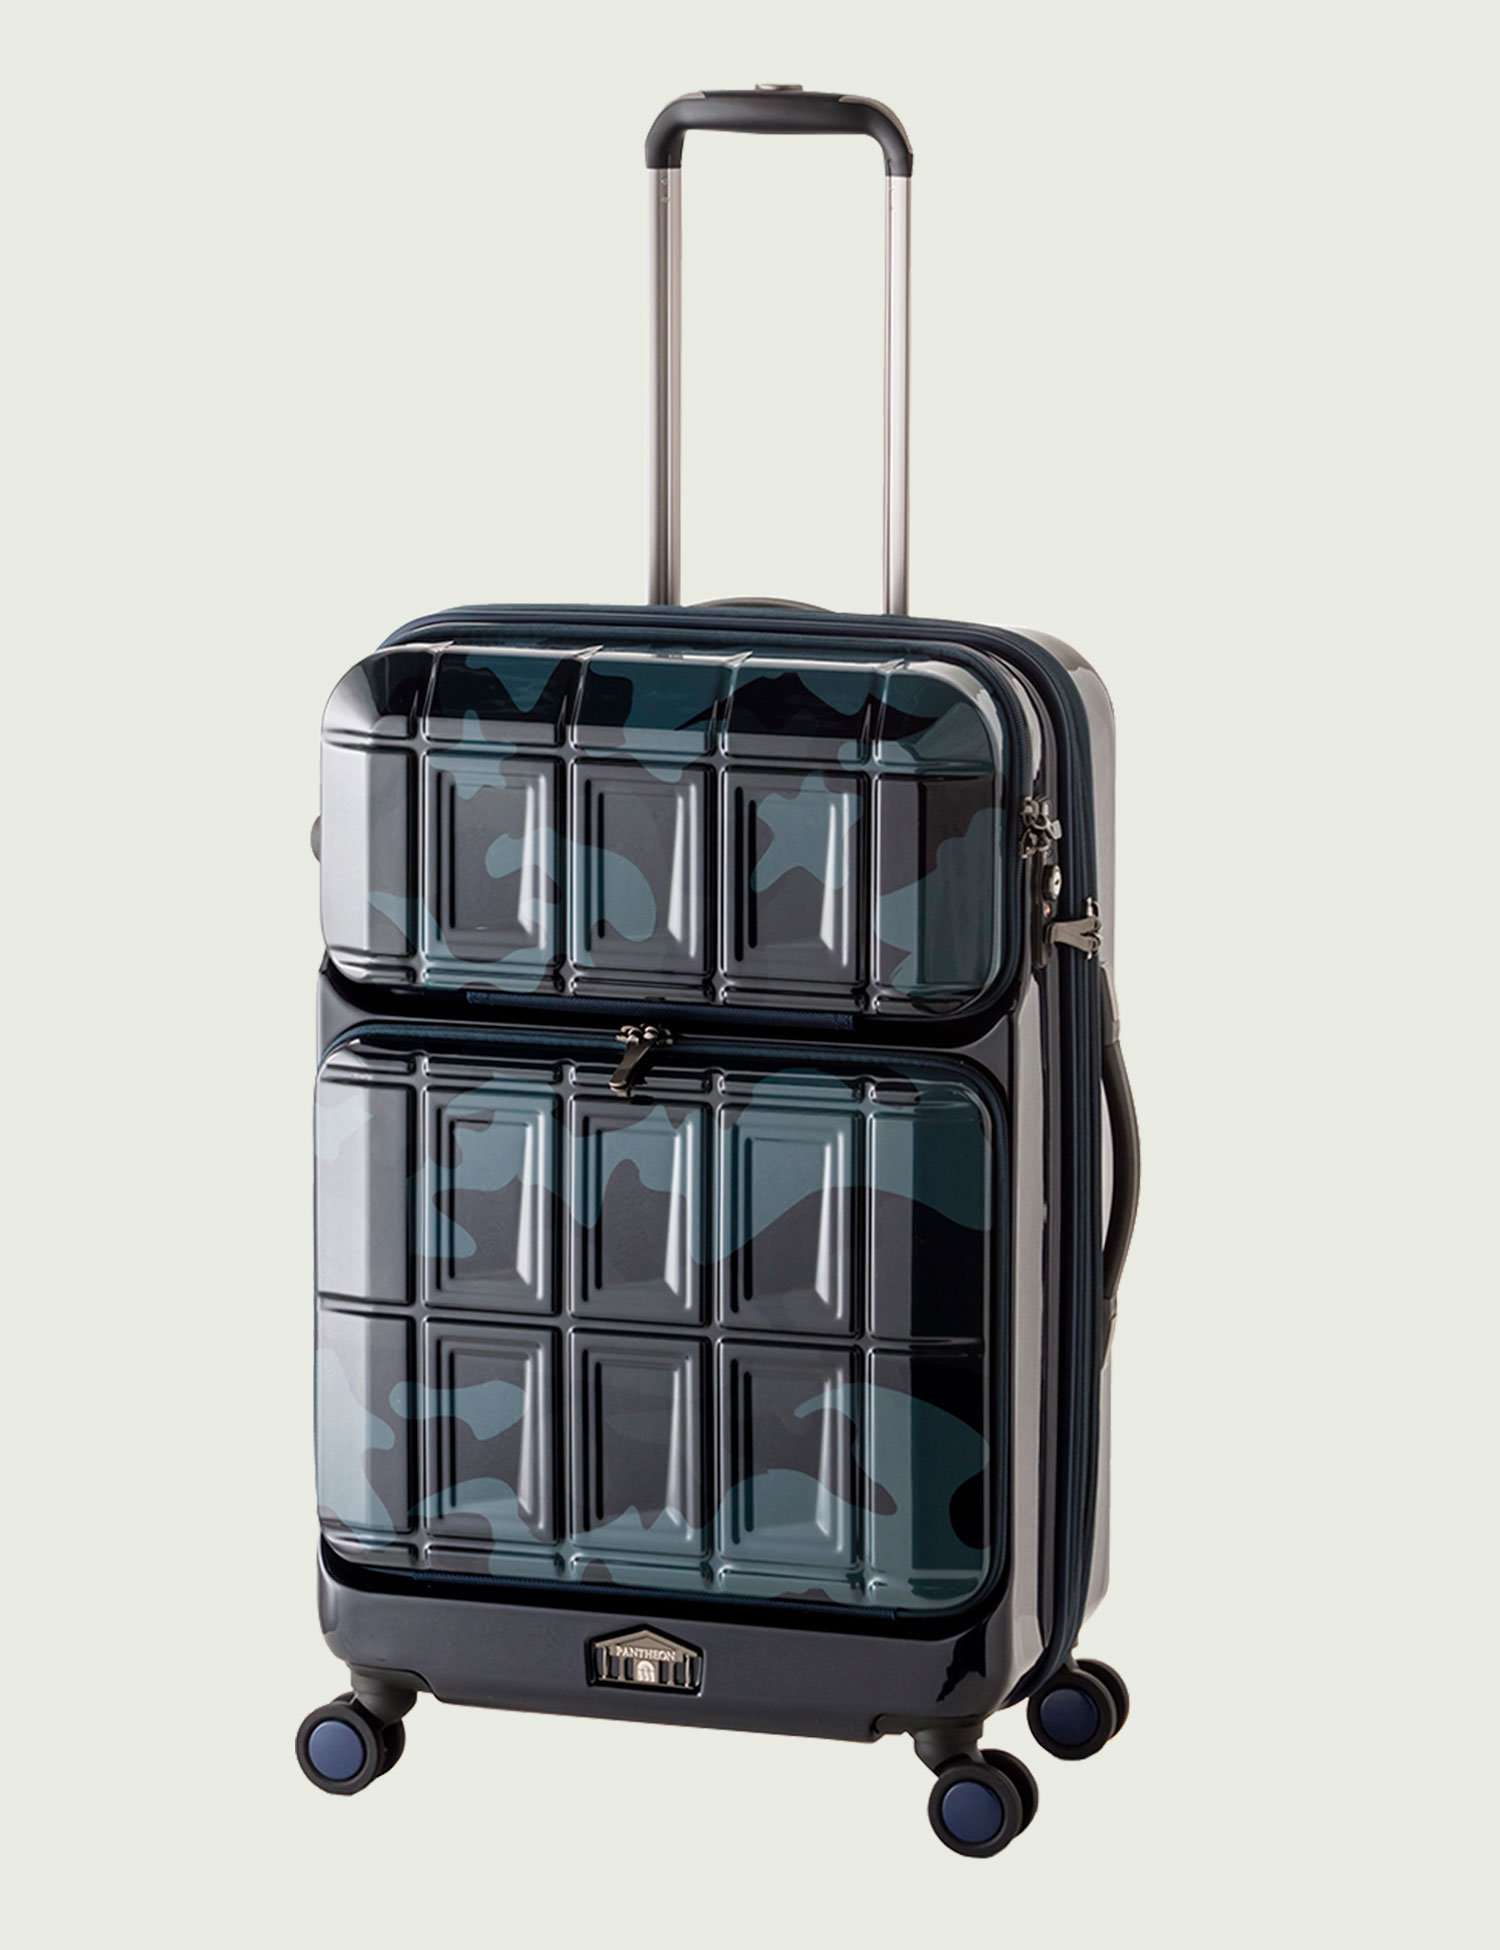 アジア・ラゲージのスーツケース PANTHEON (パンテオン) | アジア 